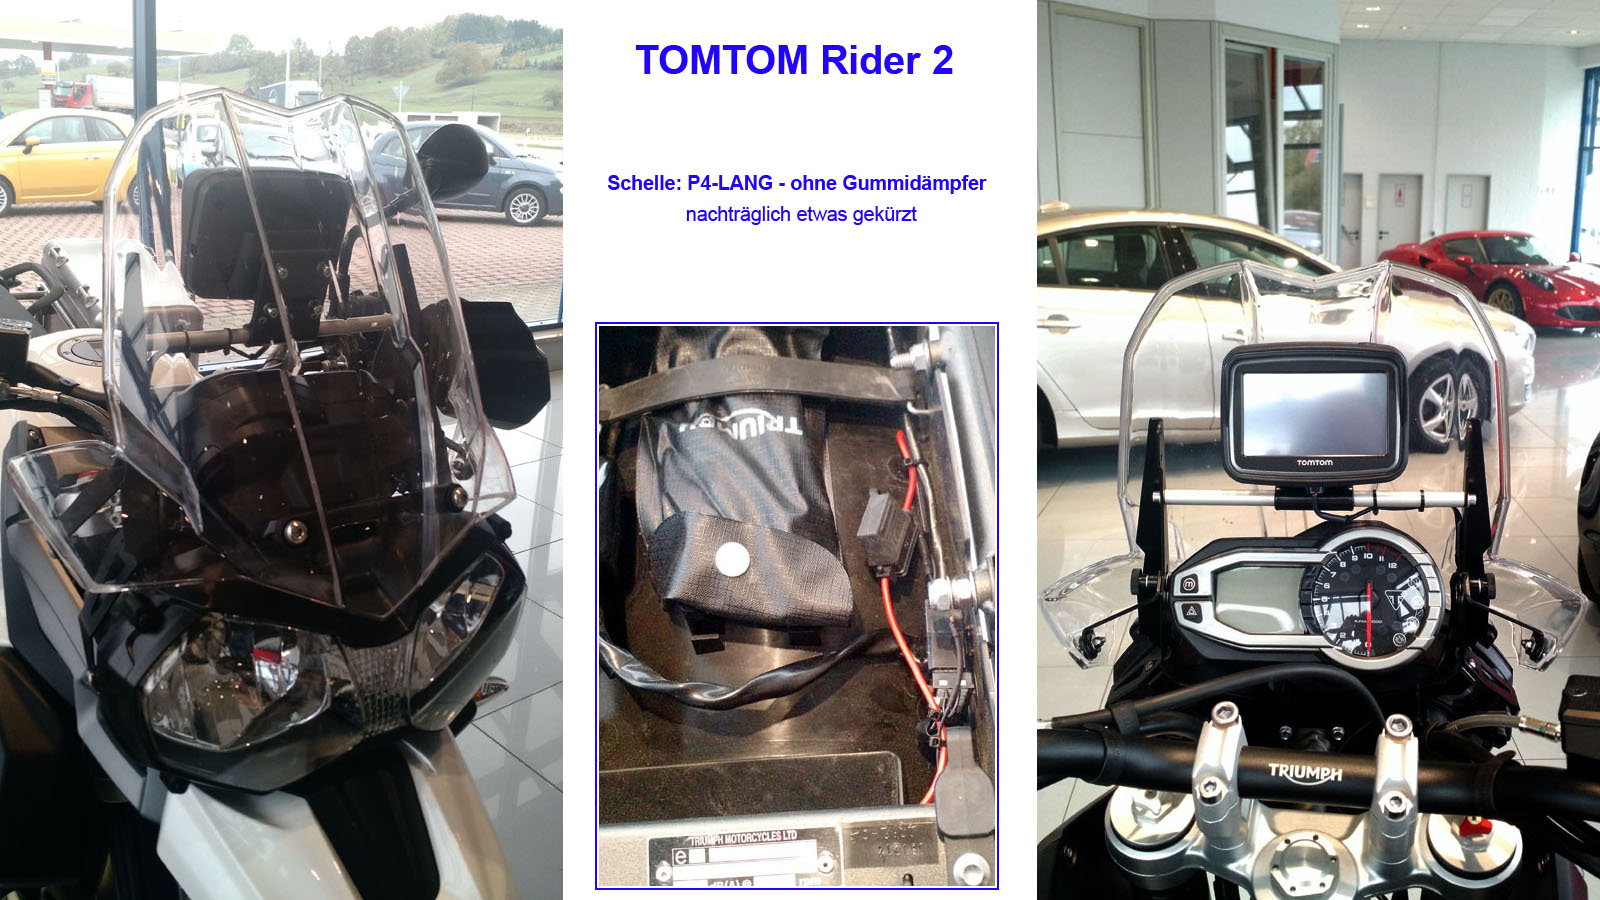 Schliessen von TomTom-Rider-Triumph-Querstrebe_Schelle-P4-LANG_Wagner.jpg